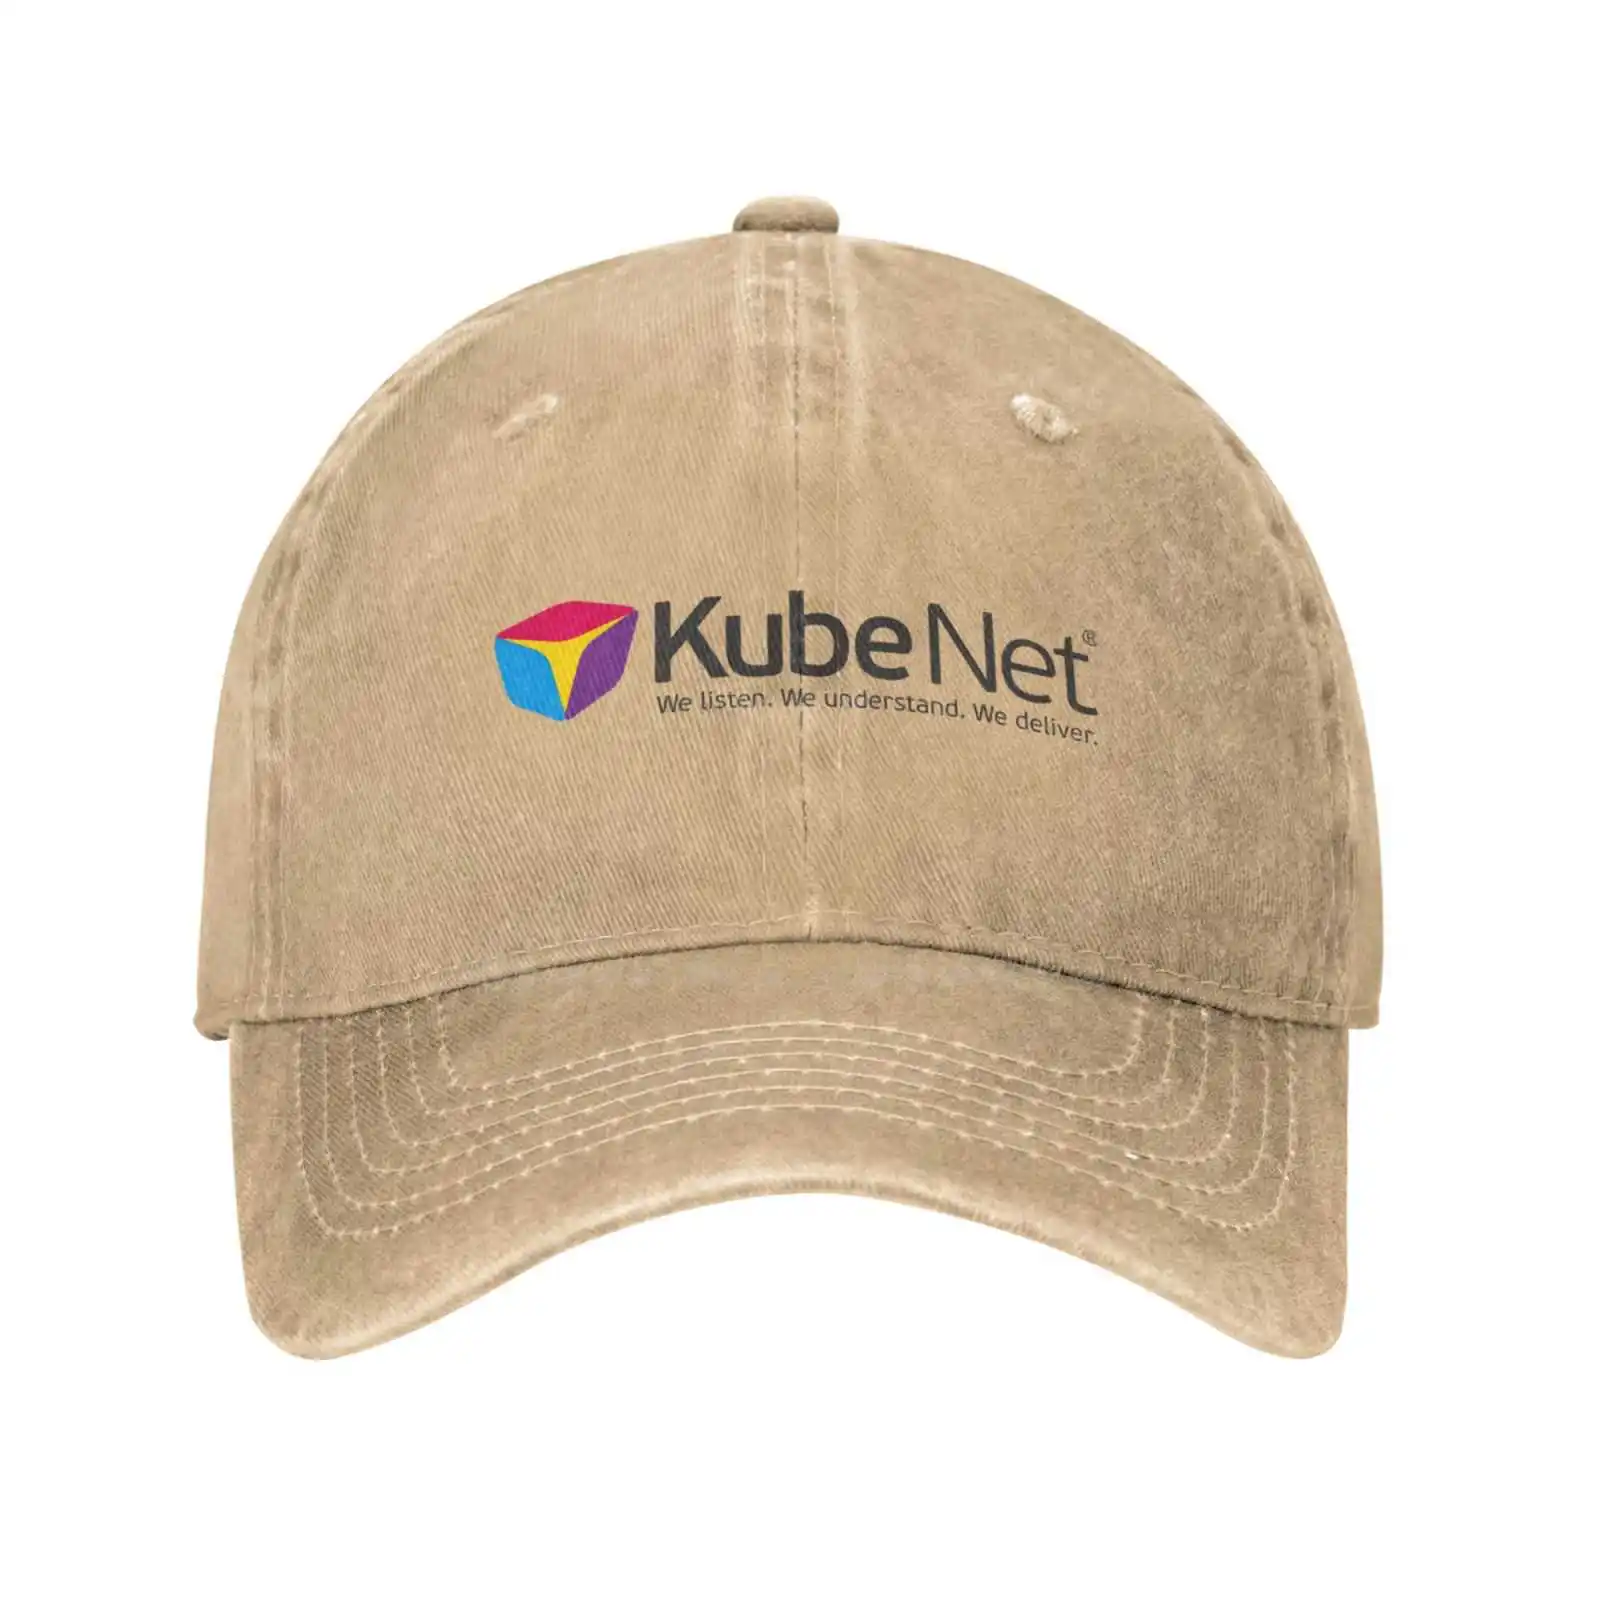 Görüntü /379326-Kubenet-logo-baskı-grafik-rahat-kot-kap-örme-şapka_cdn/share-4.jpeg